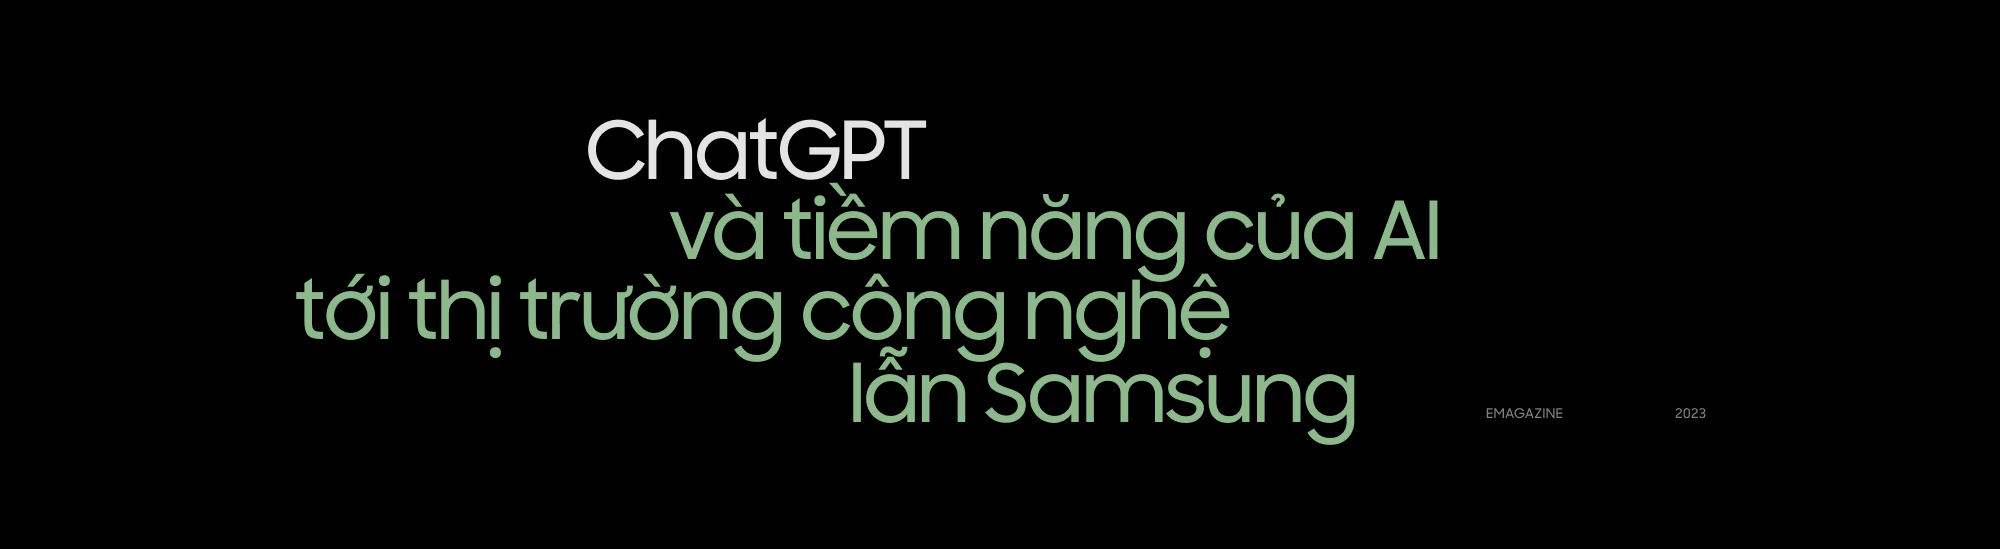 Trò chuyện với Chủ tịch trẻ nhất của Samsung về Chat GPT, những chiếc Galaxy S23 làm từ lưới đánh cá và sứ mệnh mới của tập đoàn - Ảnh 3.